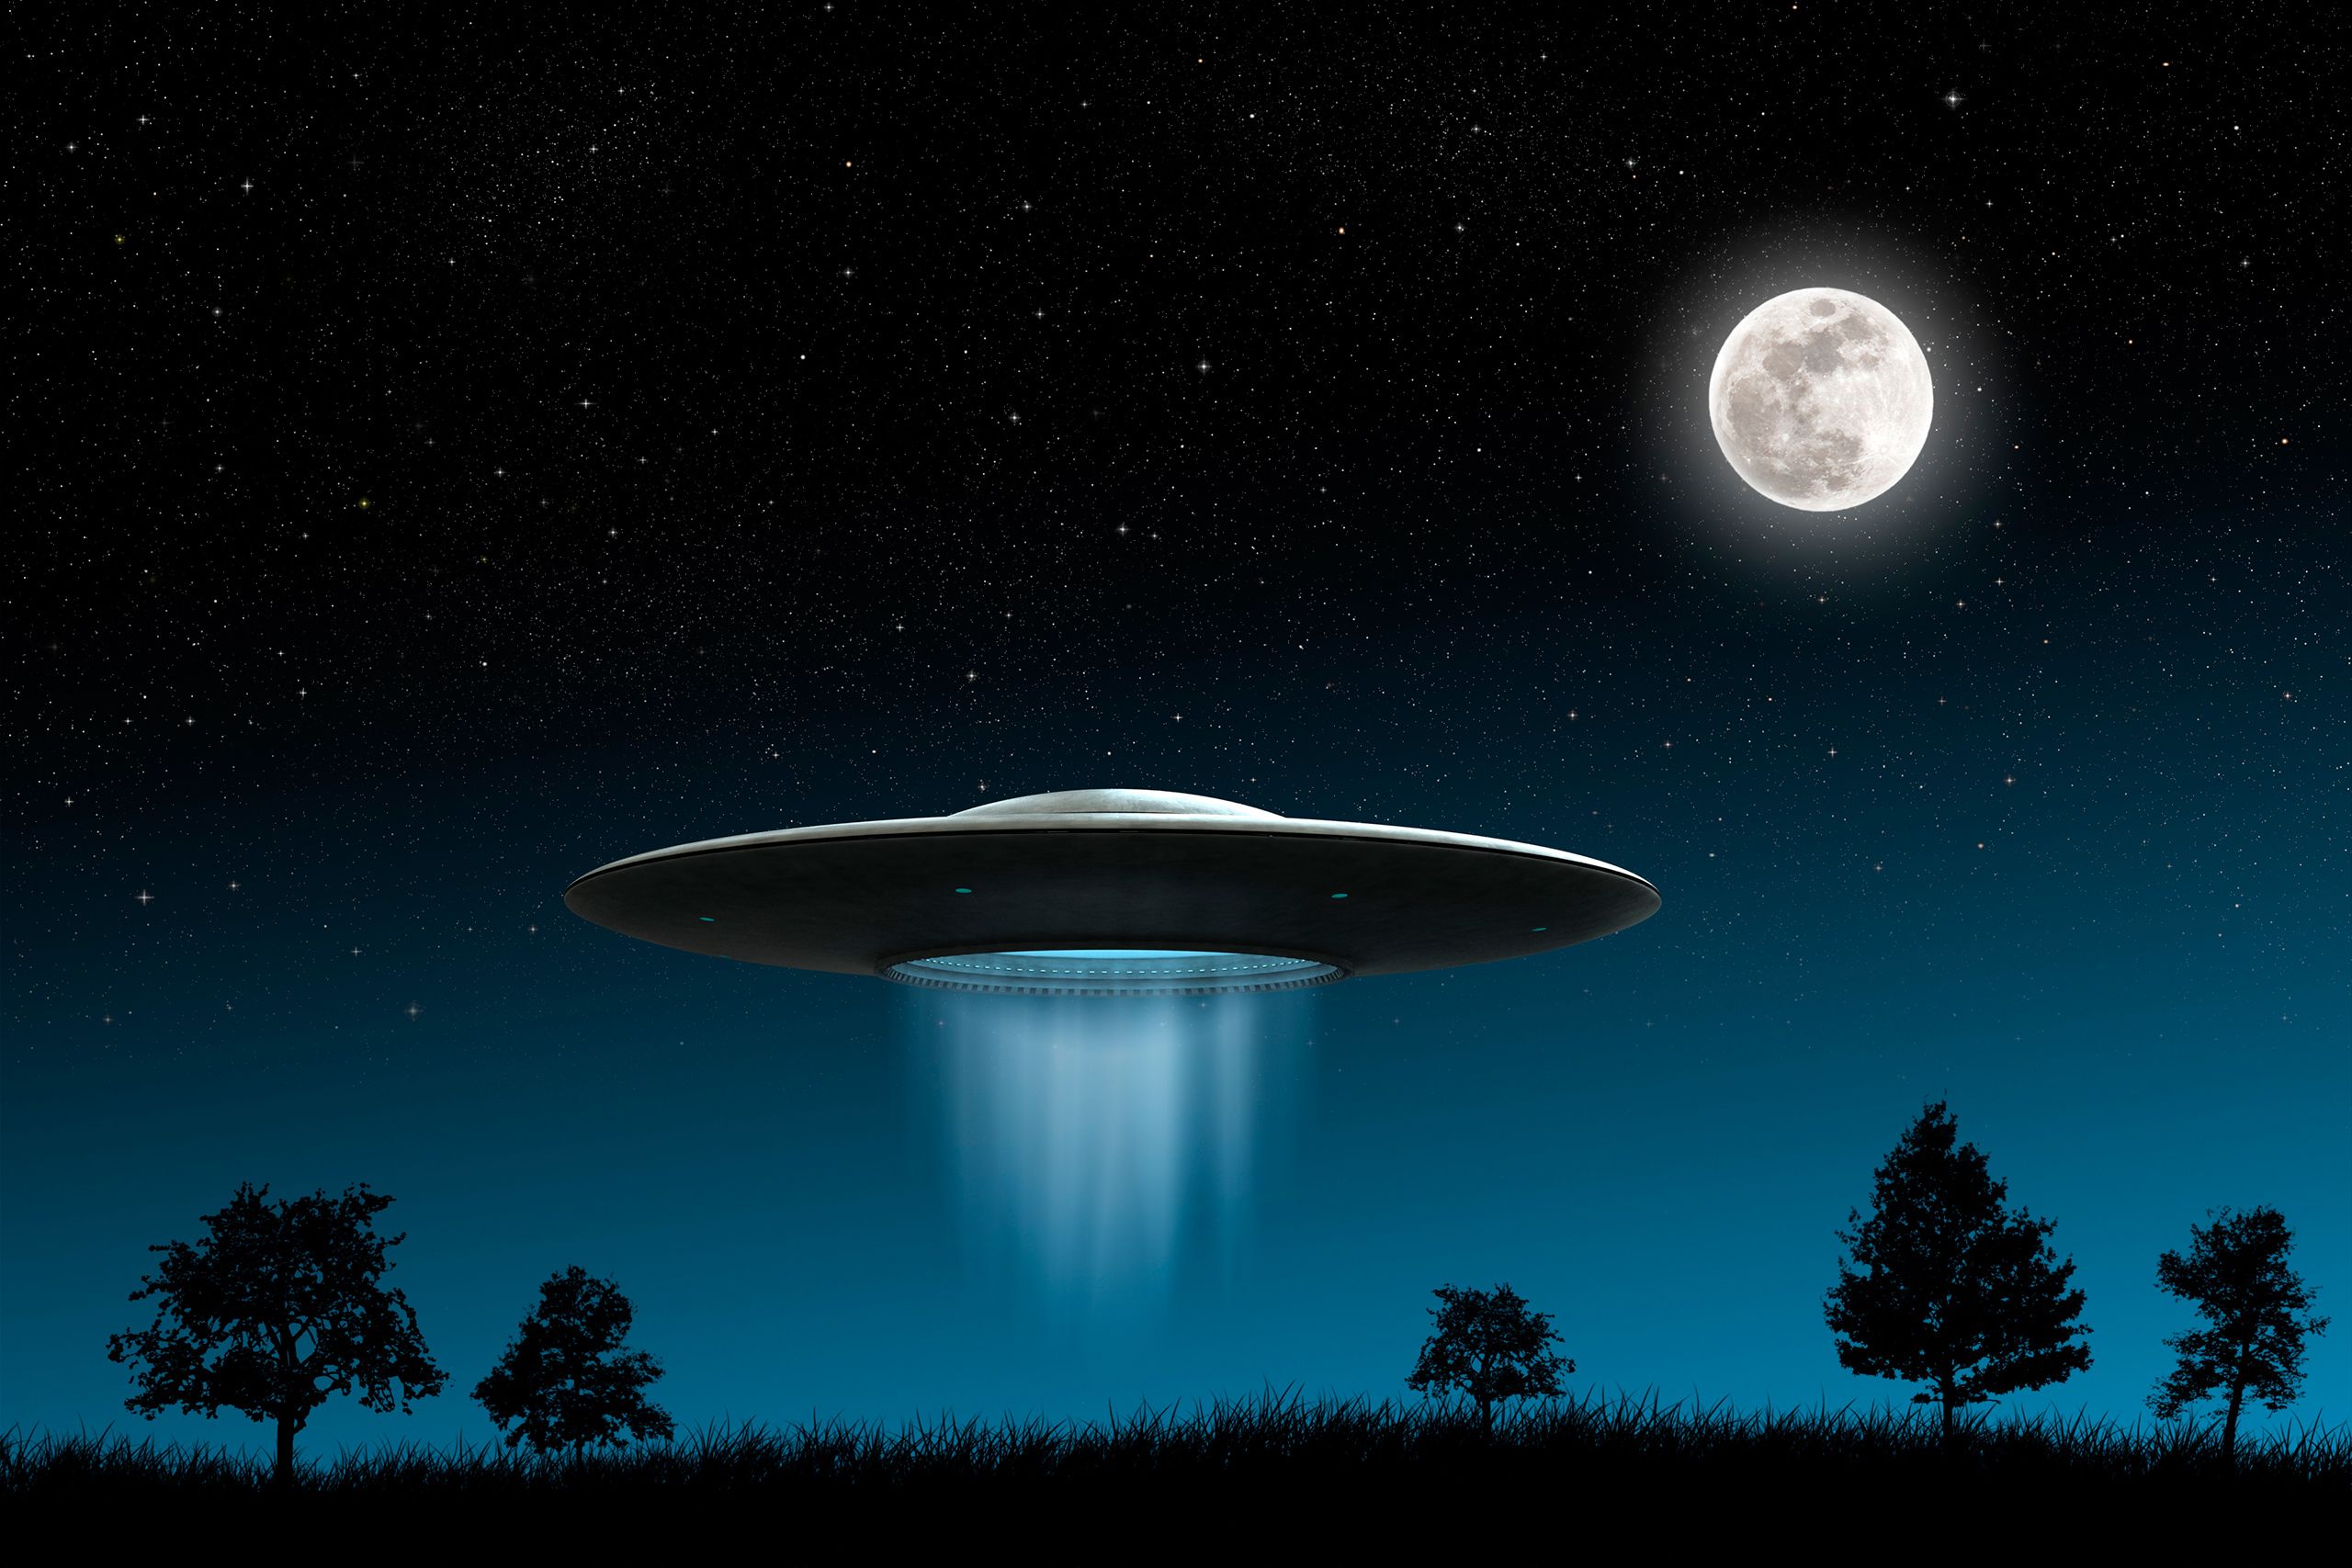 Σεντσέν: Φωτογραφίες με μυστηριώδη φώτα που μοιάζουν με UFO